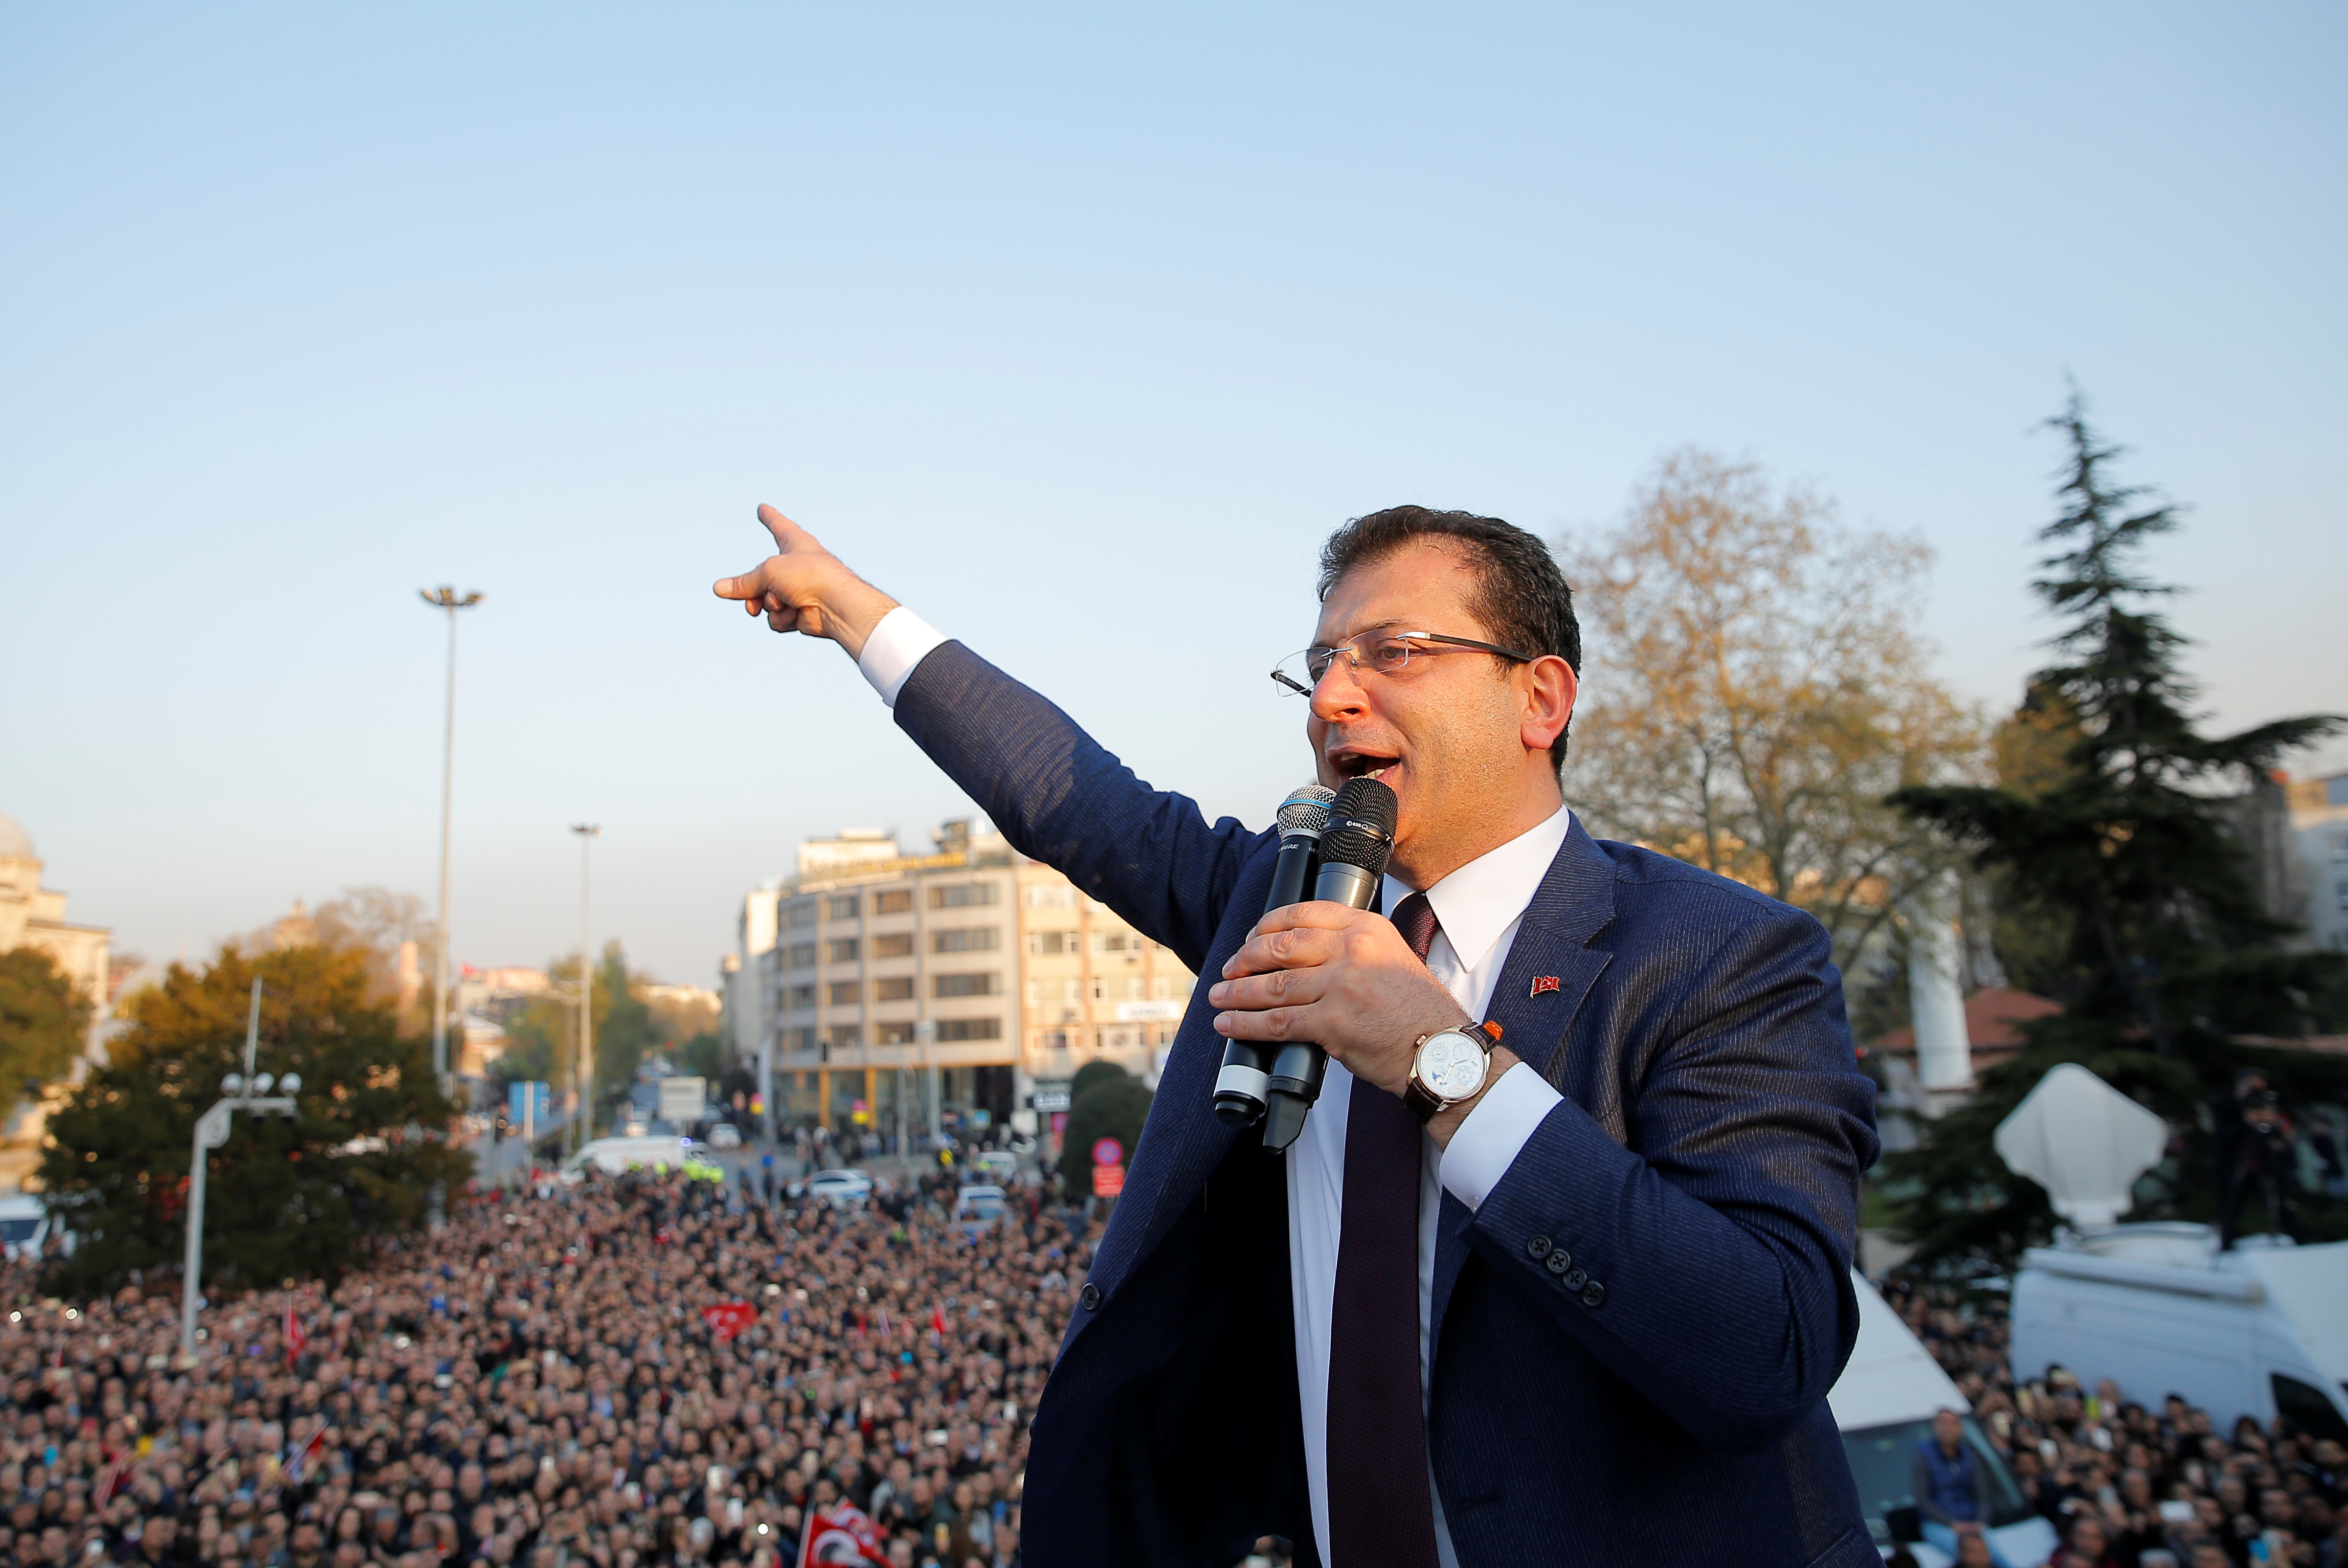 احتفالات اسطنبول بفوز مرشح المعارضة على حساب الحزب الحاكم (4)